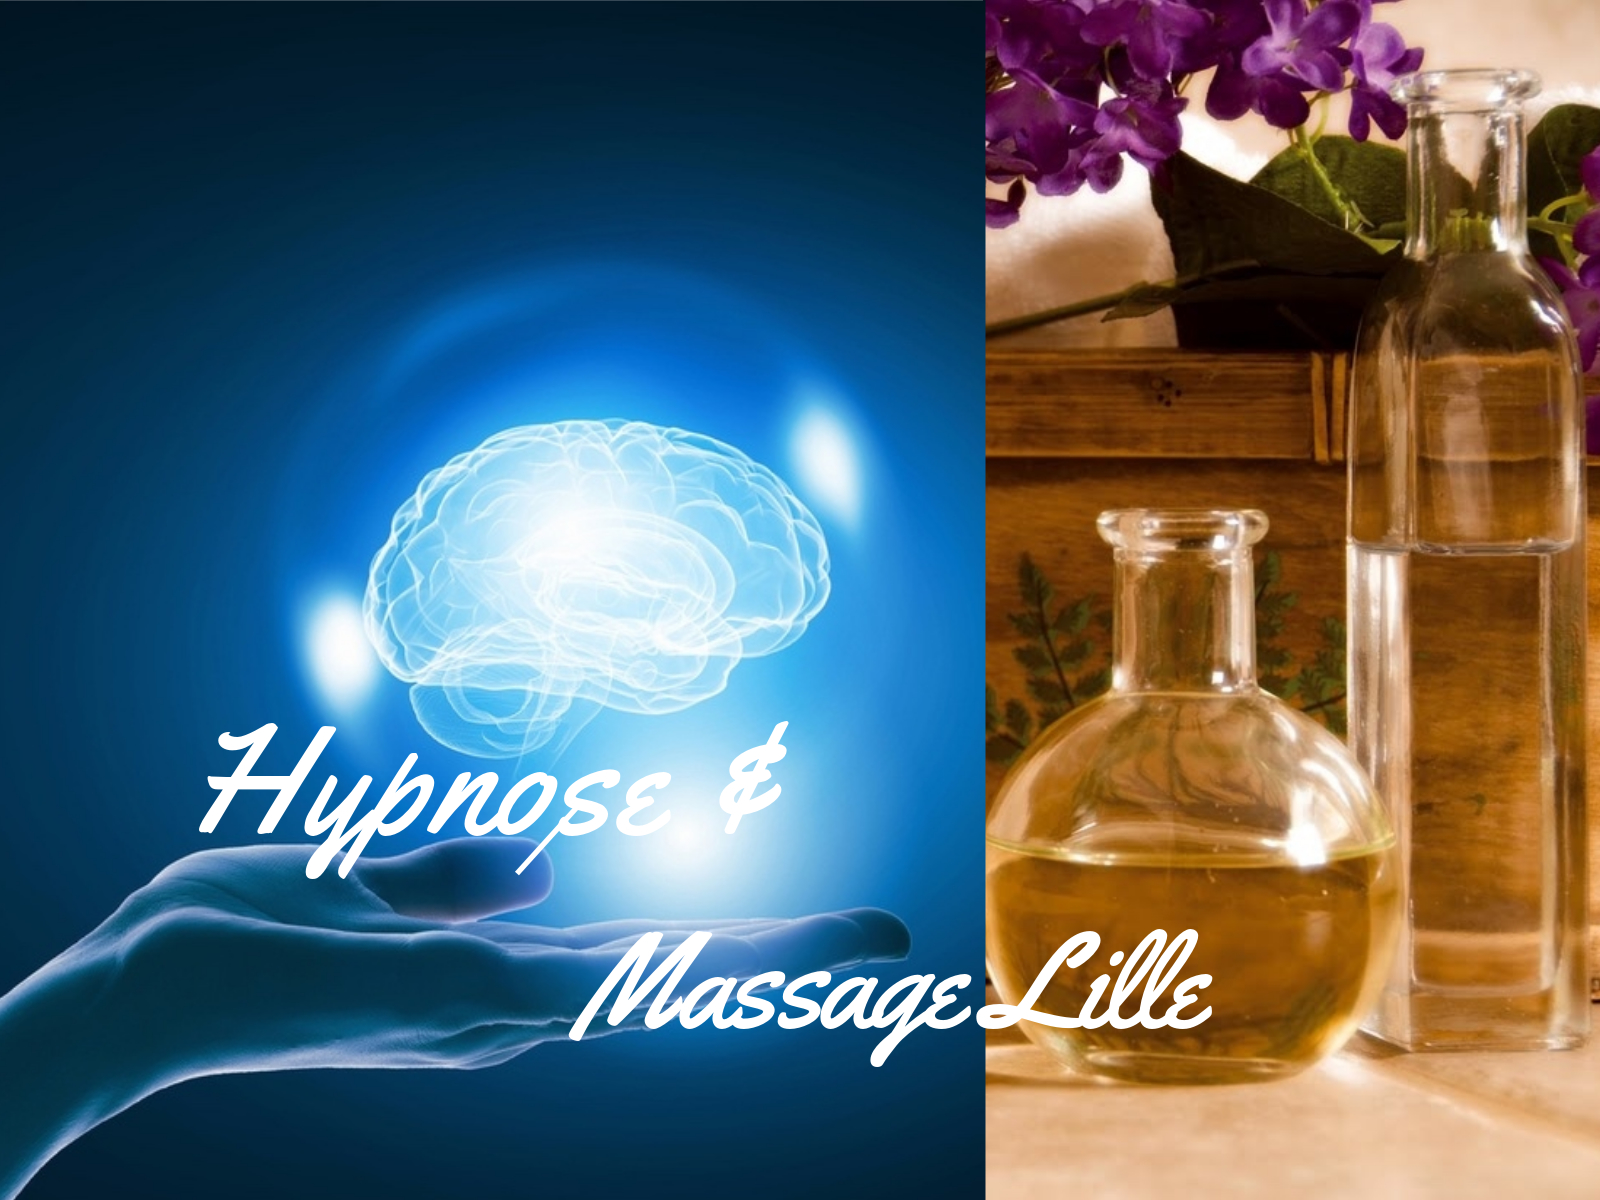 bleu - cerveau - man tendue - hypnose et massage lille - orange - fioles - fleurs